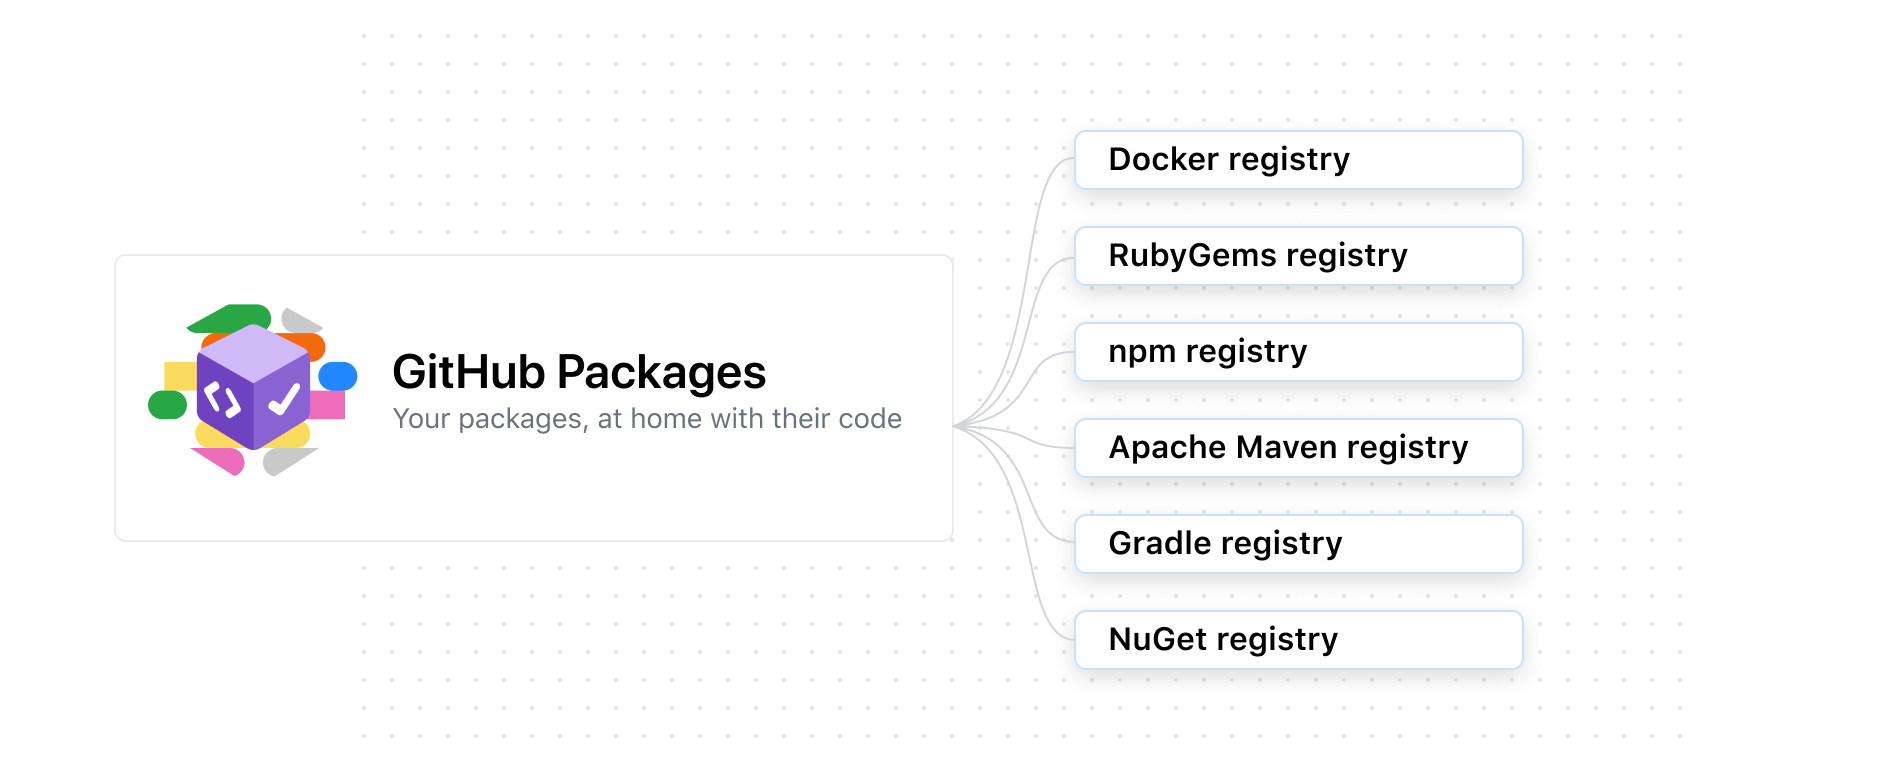 Diagrama ue muestra la compatibilidad de paquetes para Docker, RubyGems, npm, Apache Maven, Gradle, NuGet y Docker